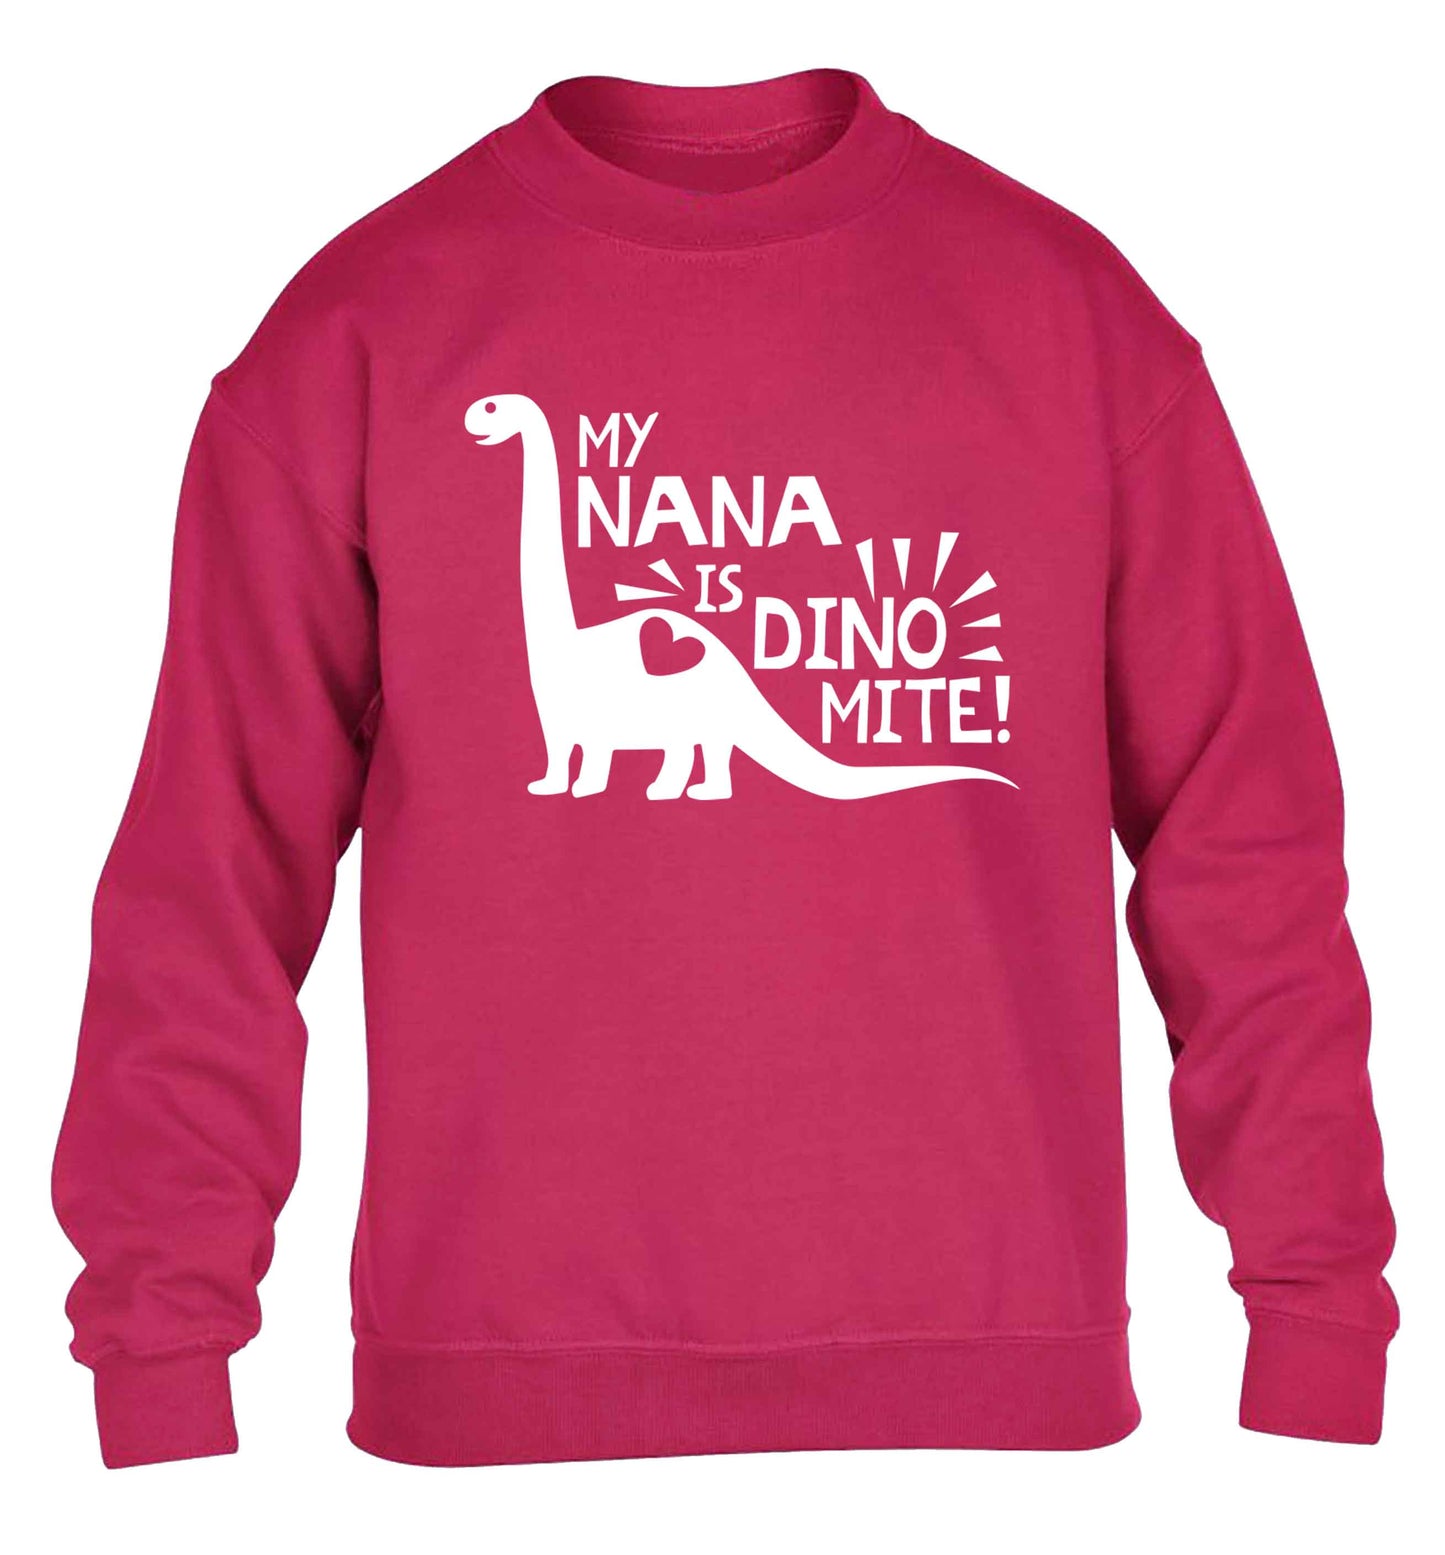 My nana is dinomite! children's pink sweater 12-13 Years